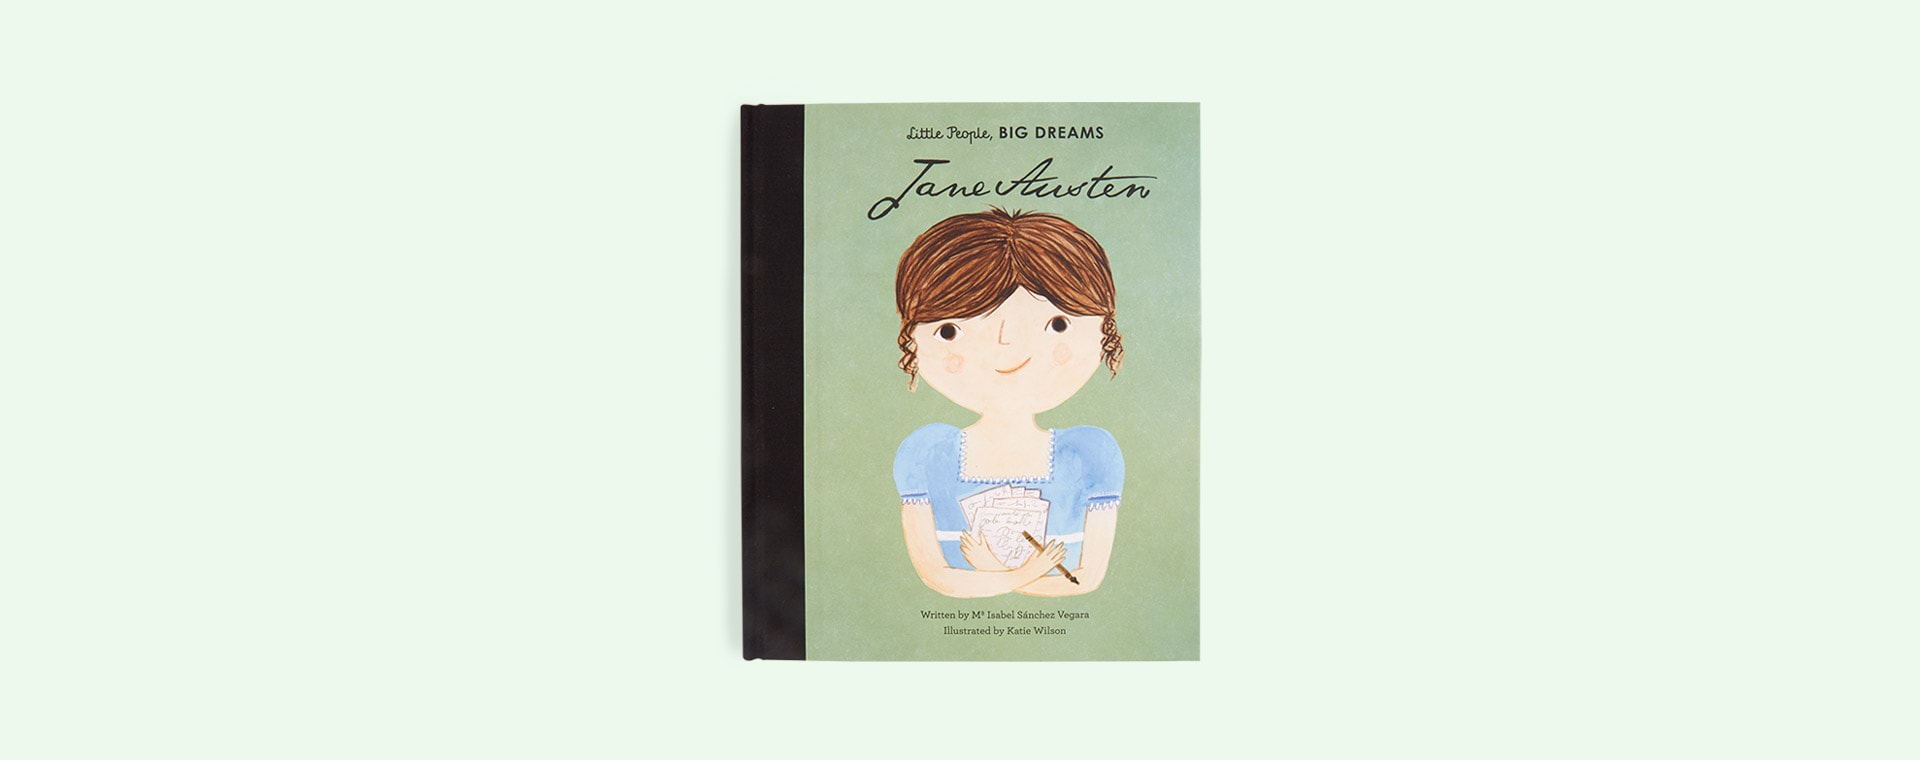 Green bookspeed Little People Big Dreams Jane Austen